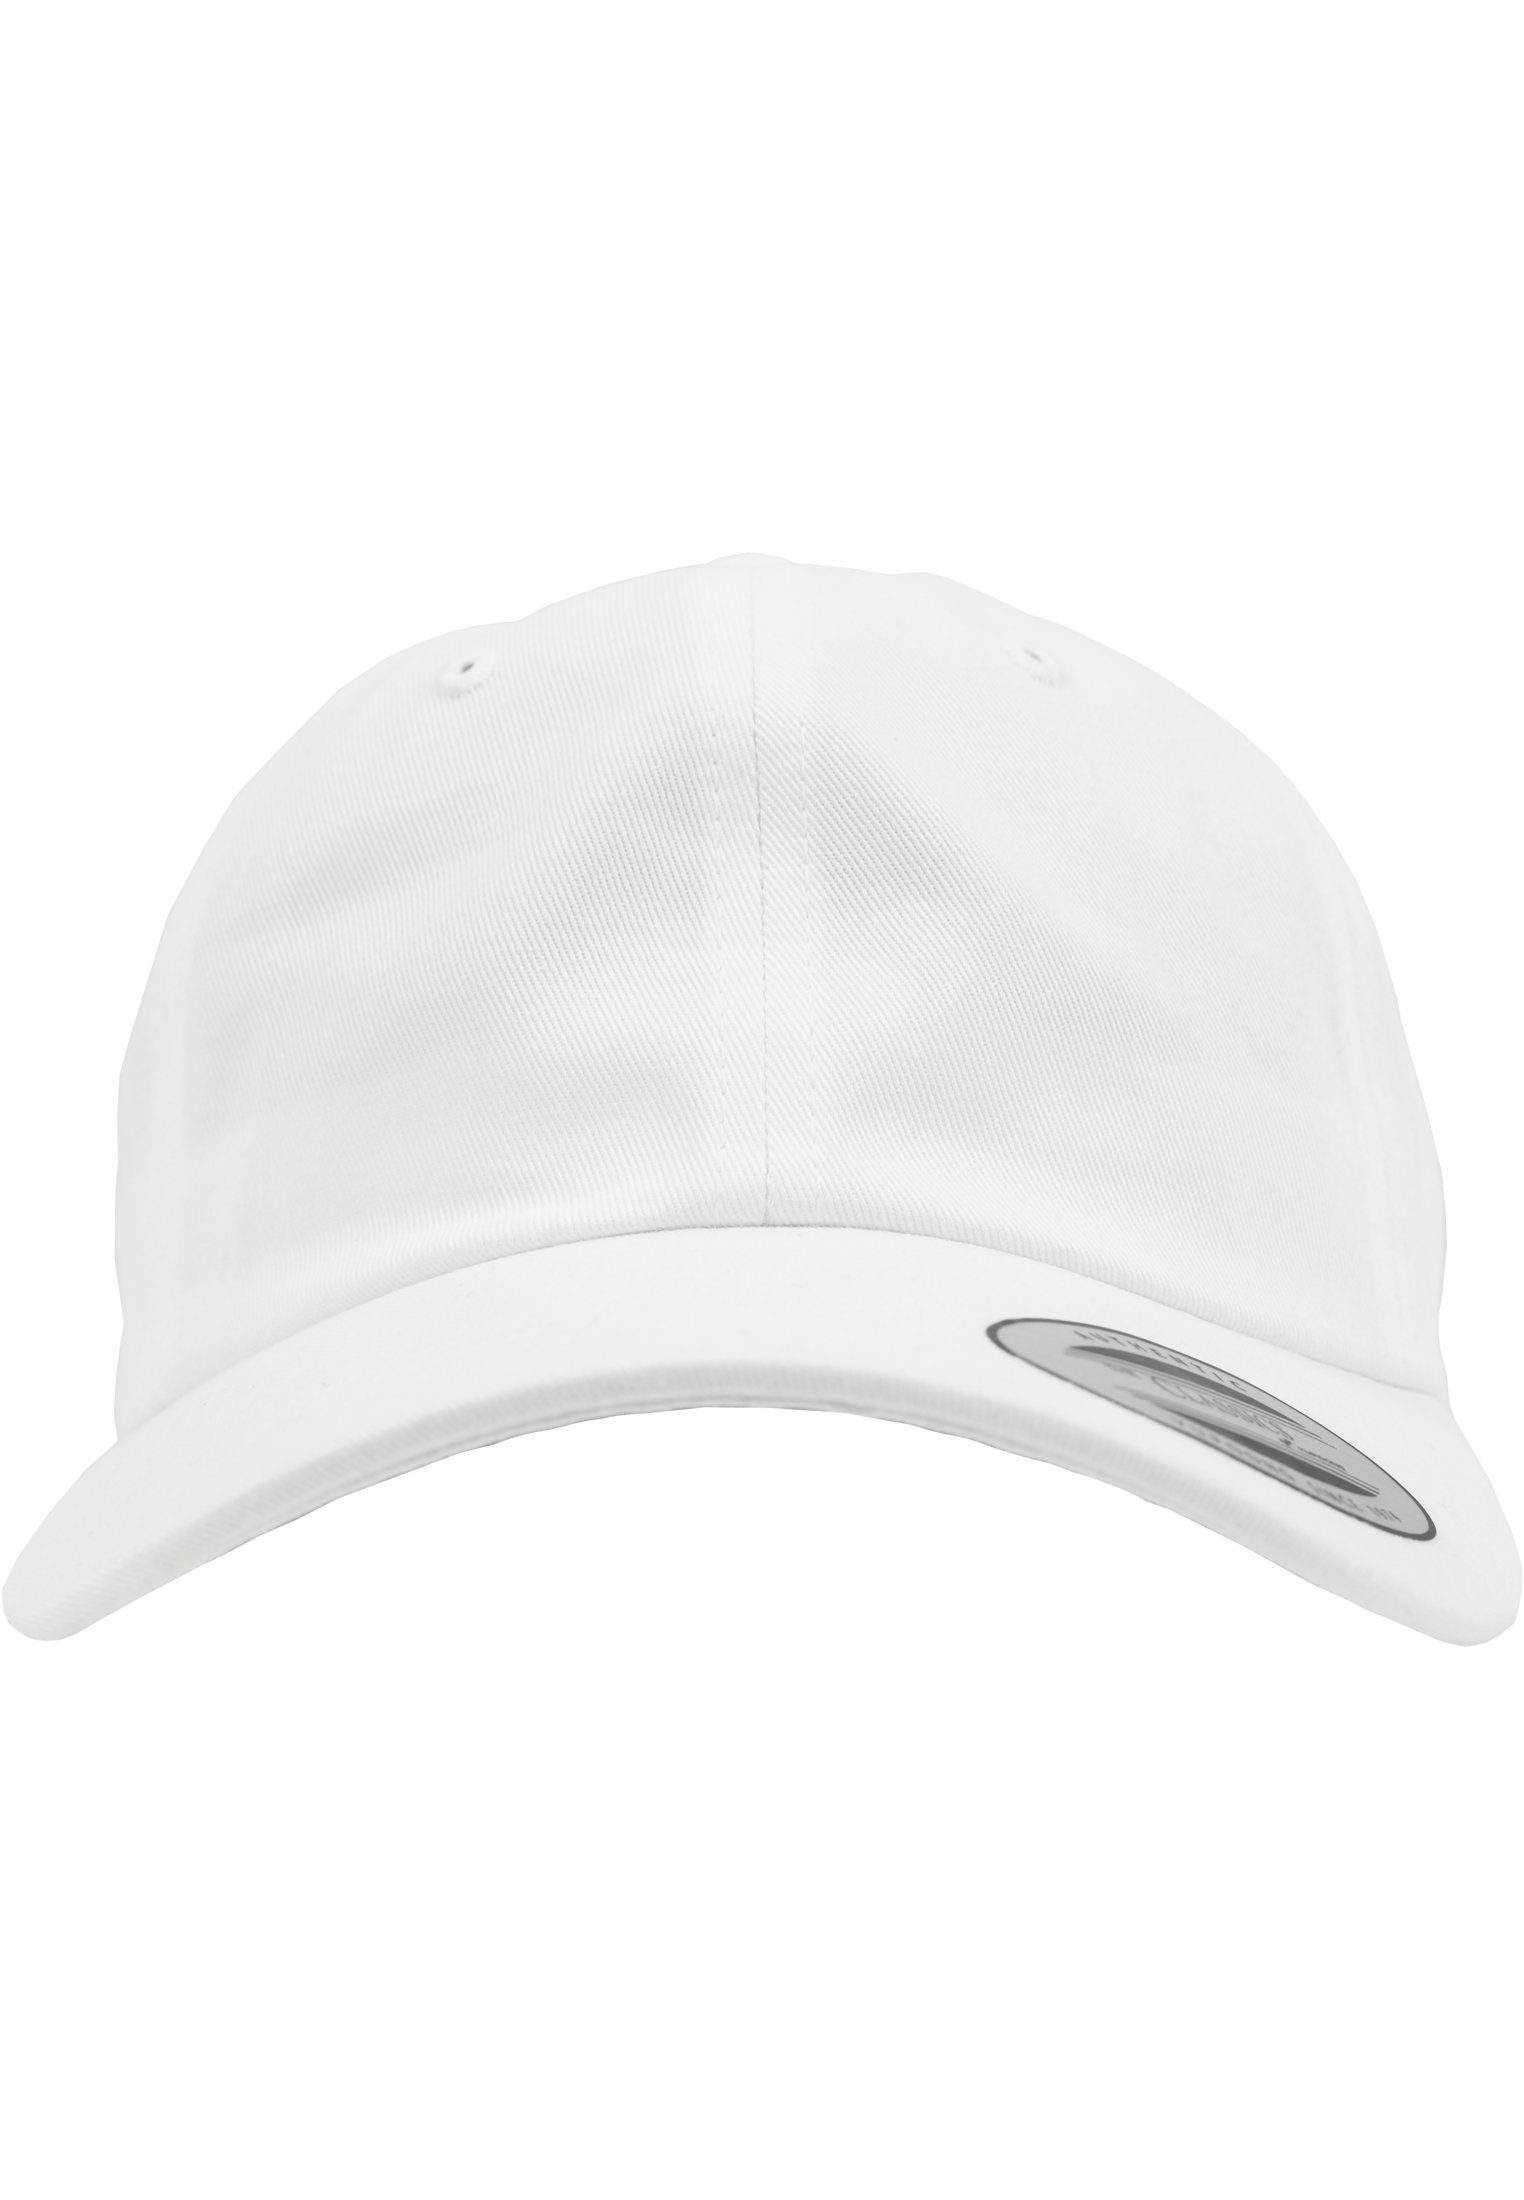 Flexfit Flex Cap Profile White Low Twill Flexfit Cotton 6245CM